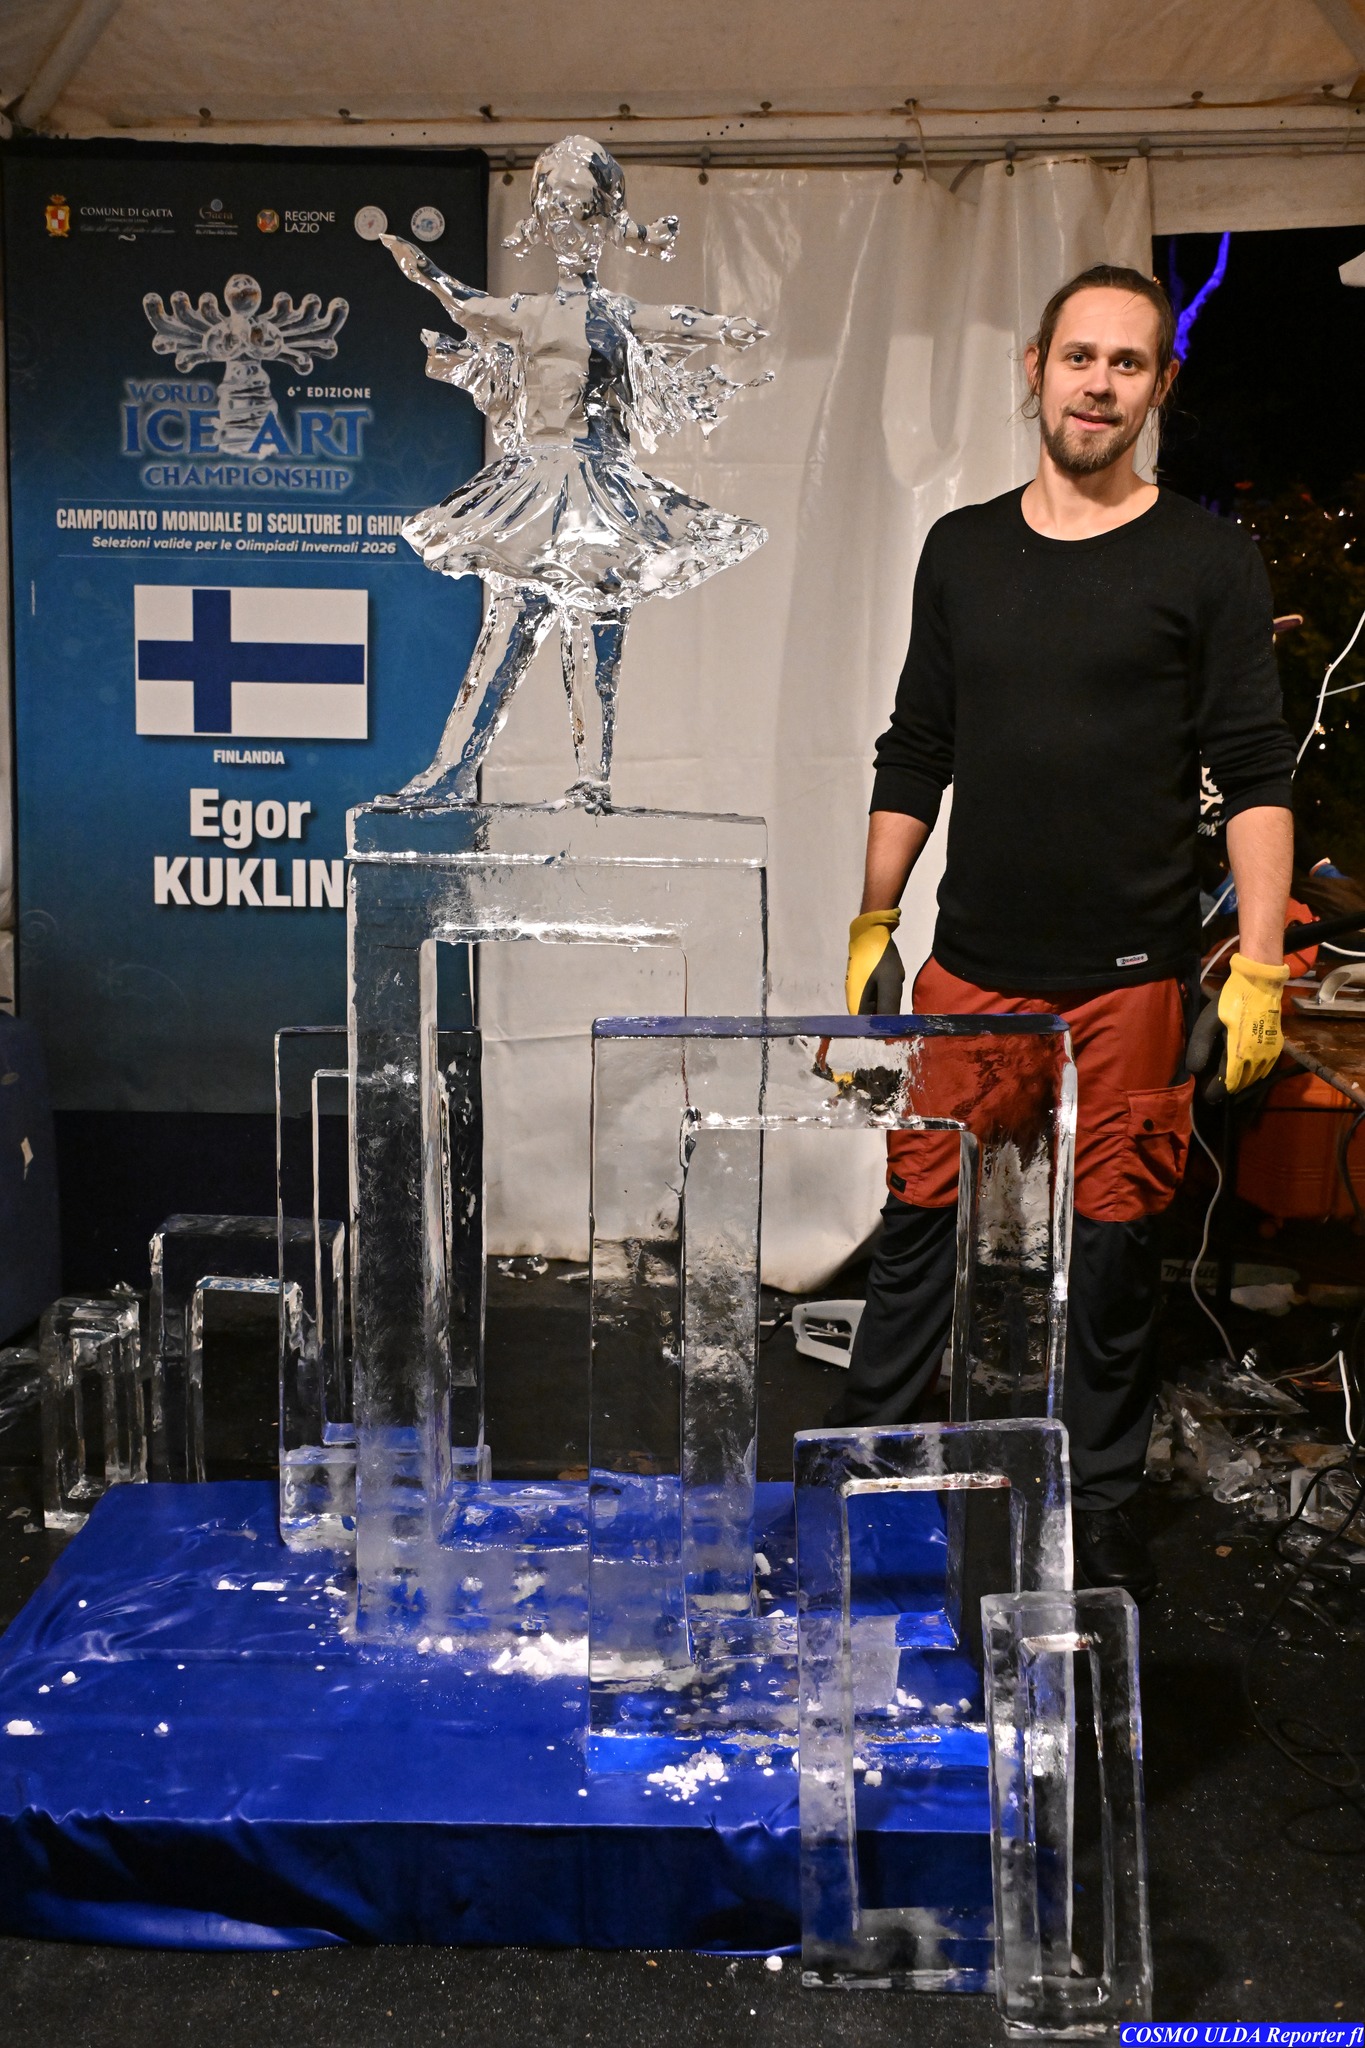 È il finlandese Egor Kuklin il vincitore della 6ª edizione del World Ice Art Championship